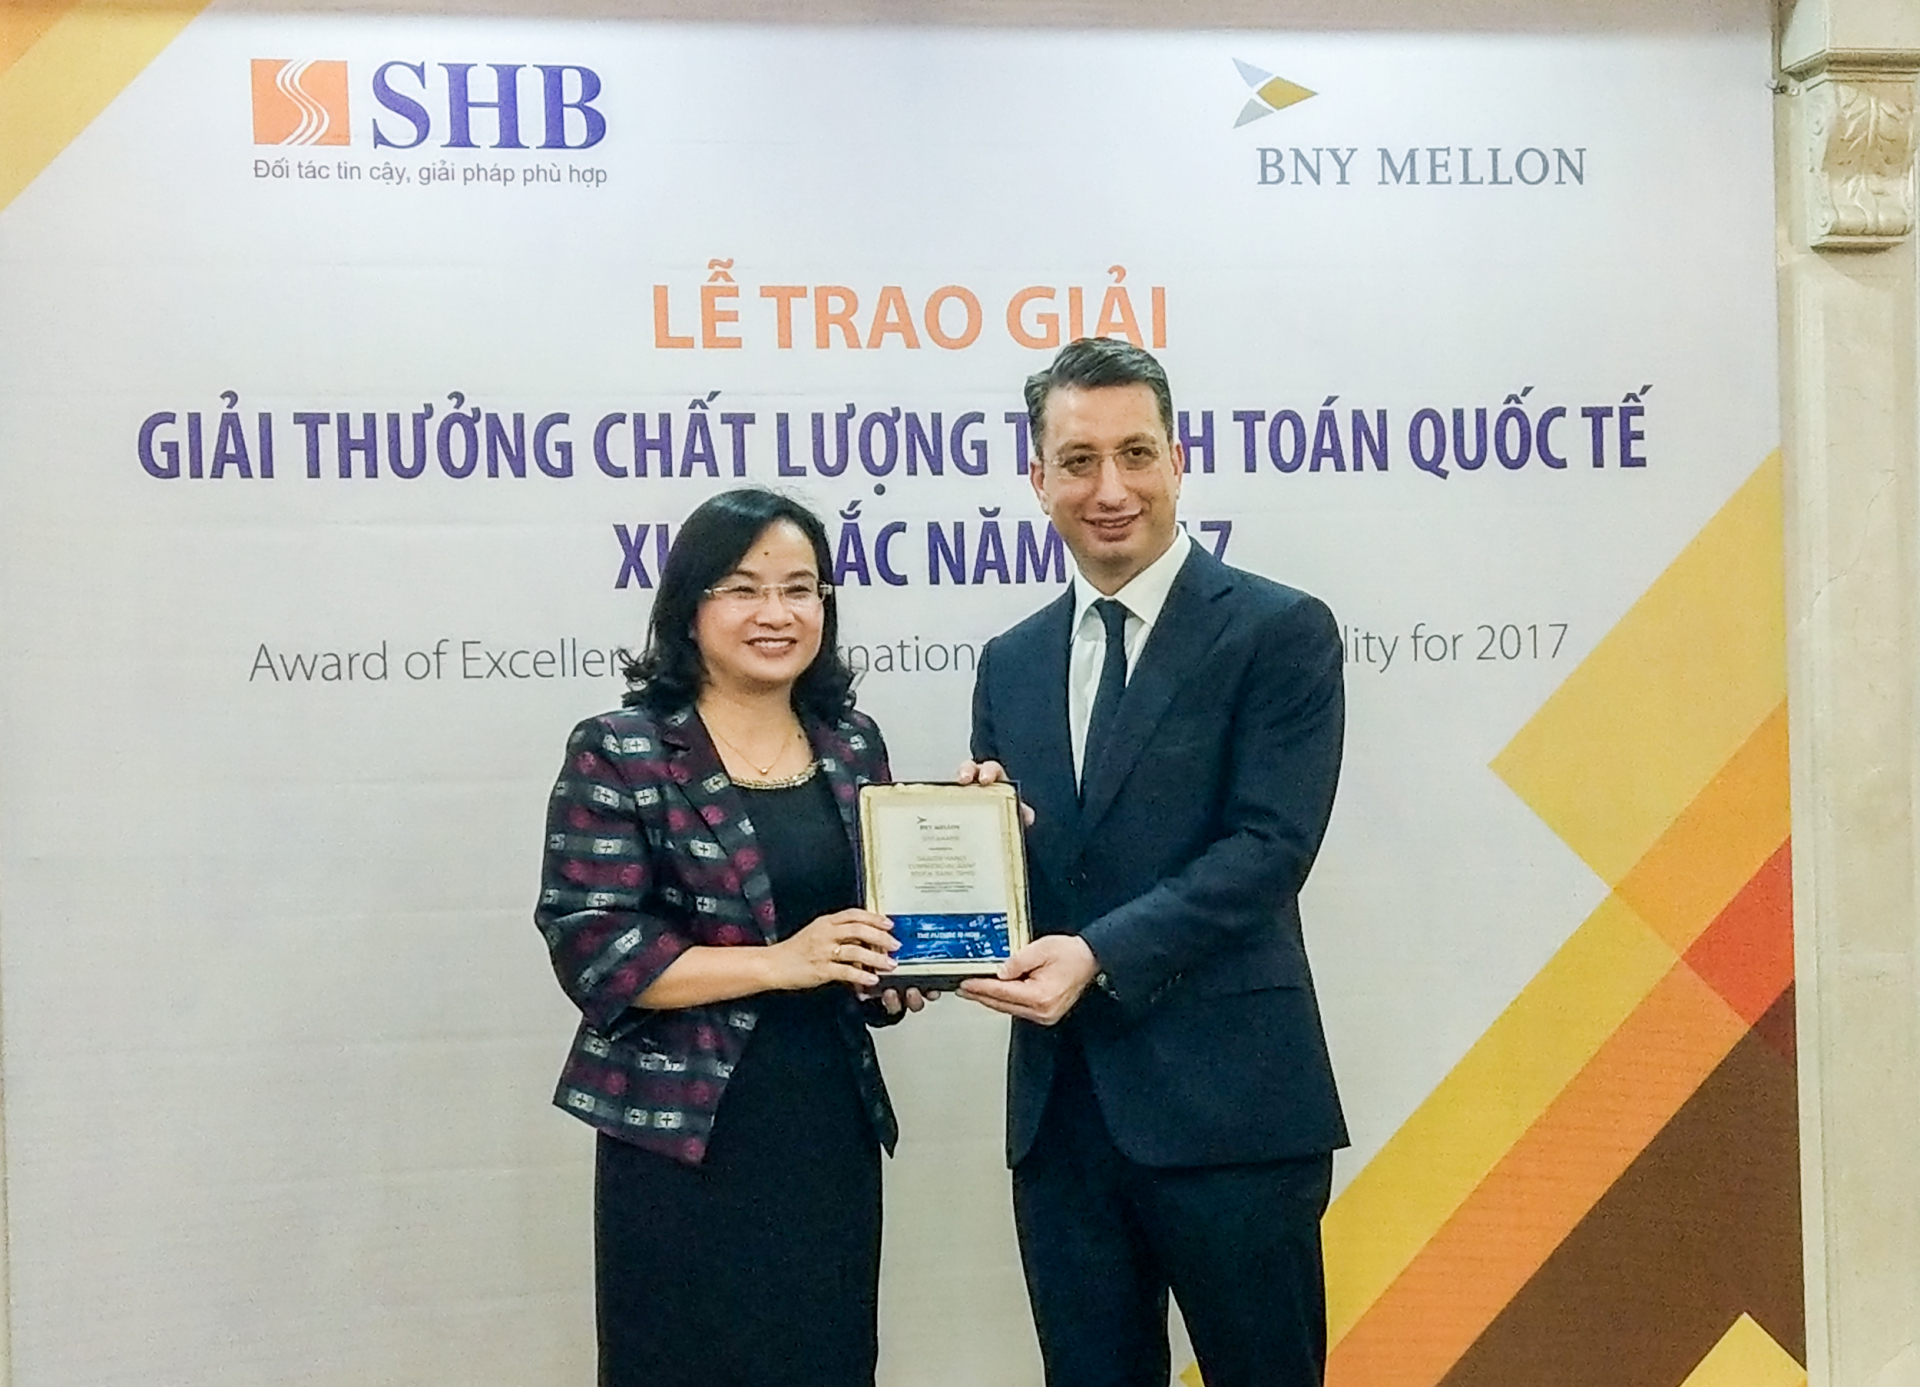 Phó Tổng Giám đốc Ngô Thu Hà đại diện ngân hàng SHB nhận giải thưởng STP Award lần thứ 8 liên tiếp, khẳng định chất lượng dịch vụ thanh toán quốc tế của SHB.